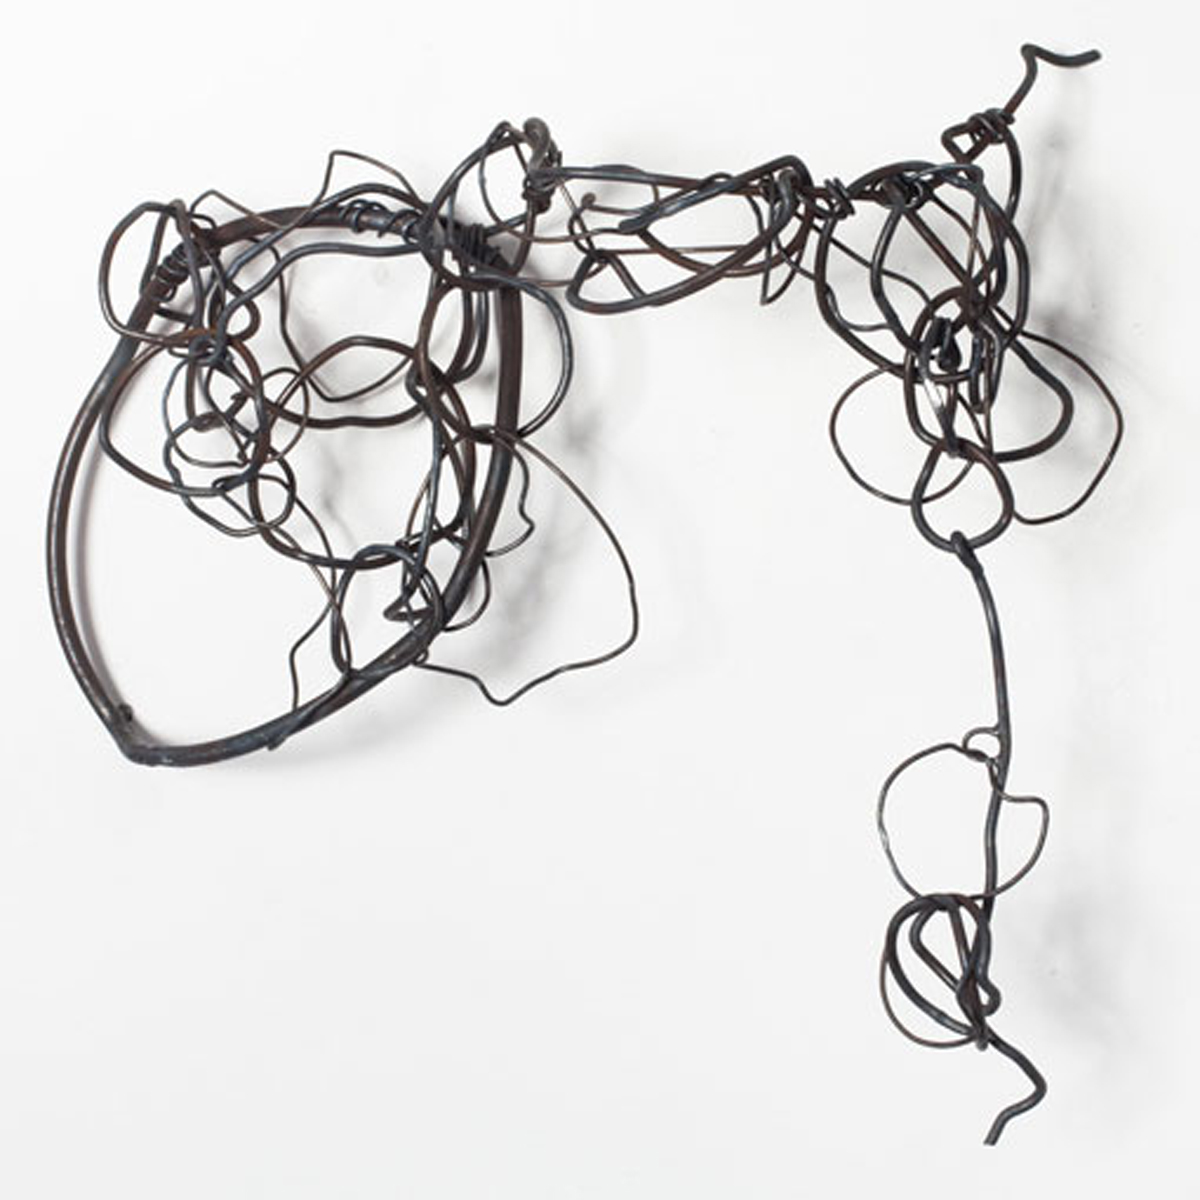 Welded steel sculptures by Rebecca Welz